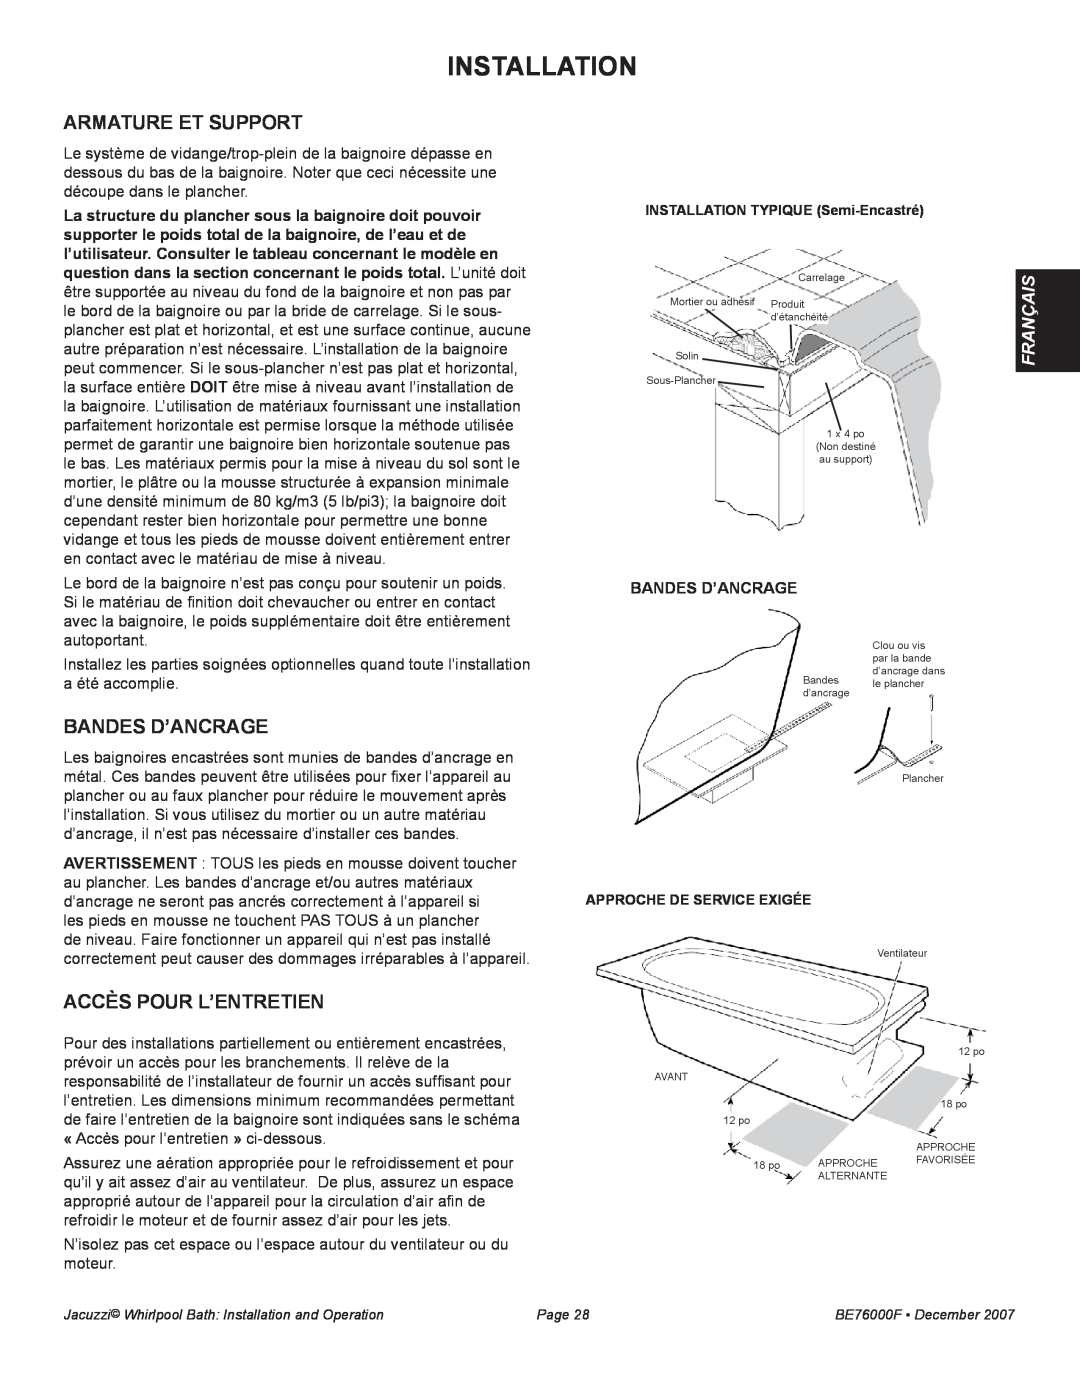 Jacuzzi LUXURY SERIES manual Armature et support, bandes d’ancrage, Accès pour l’entretien, Installation, Français 